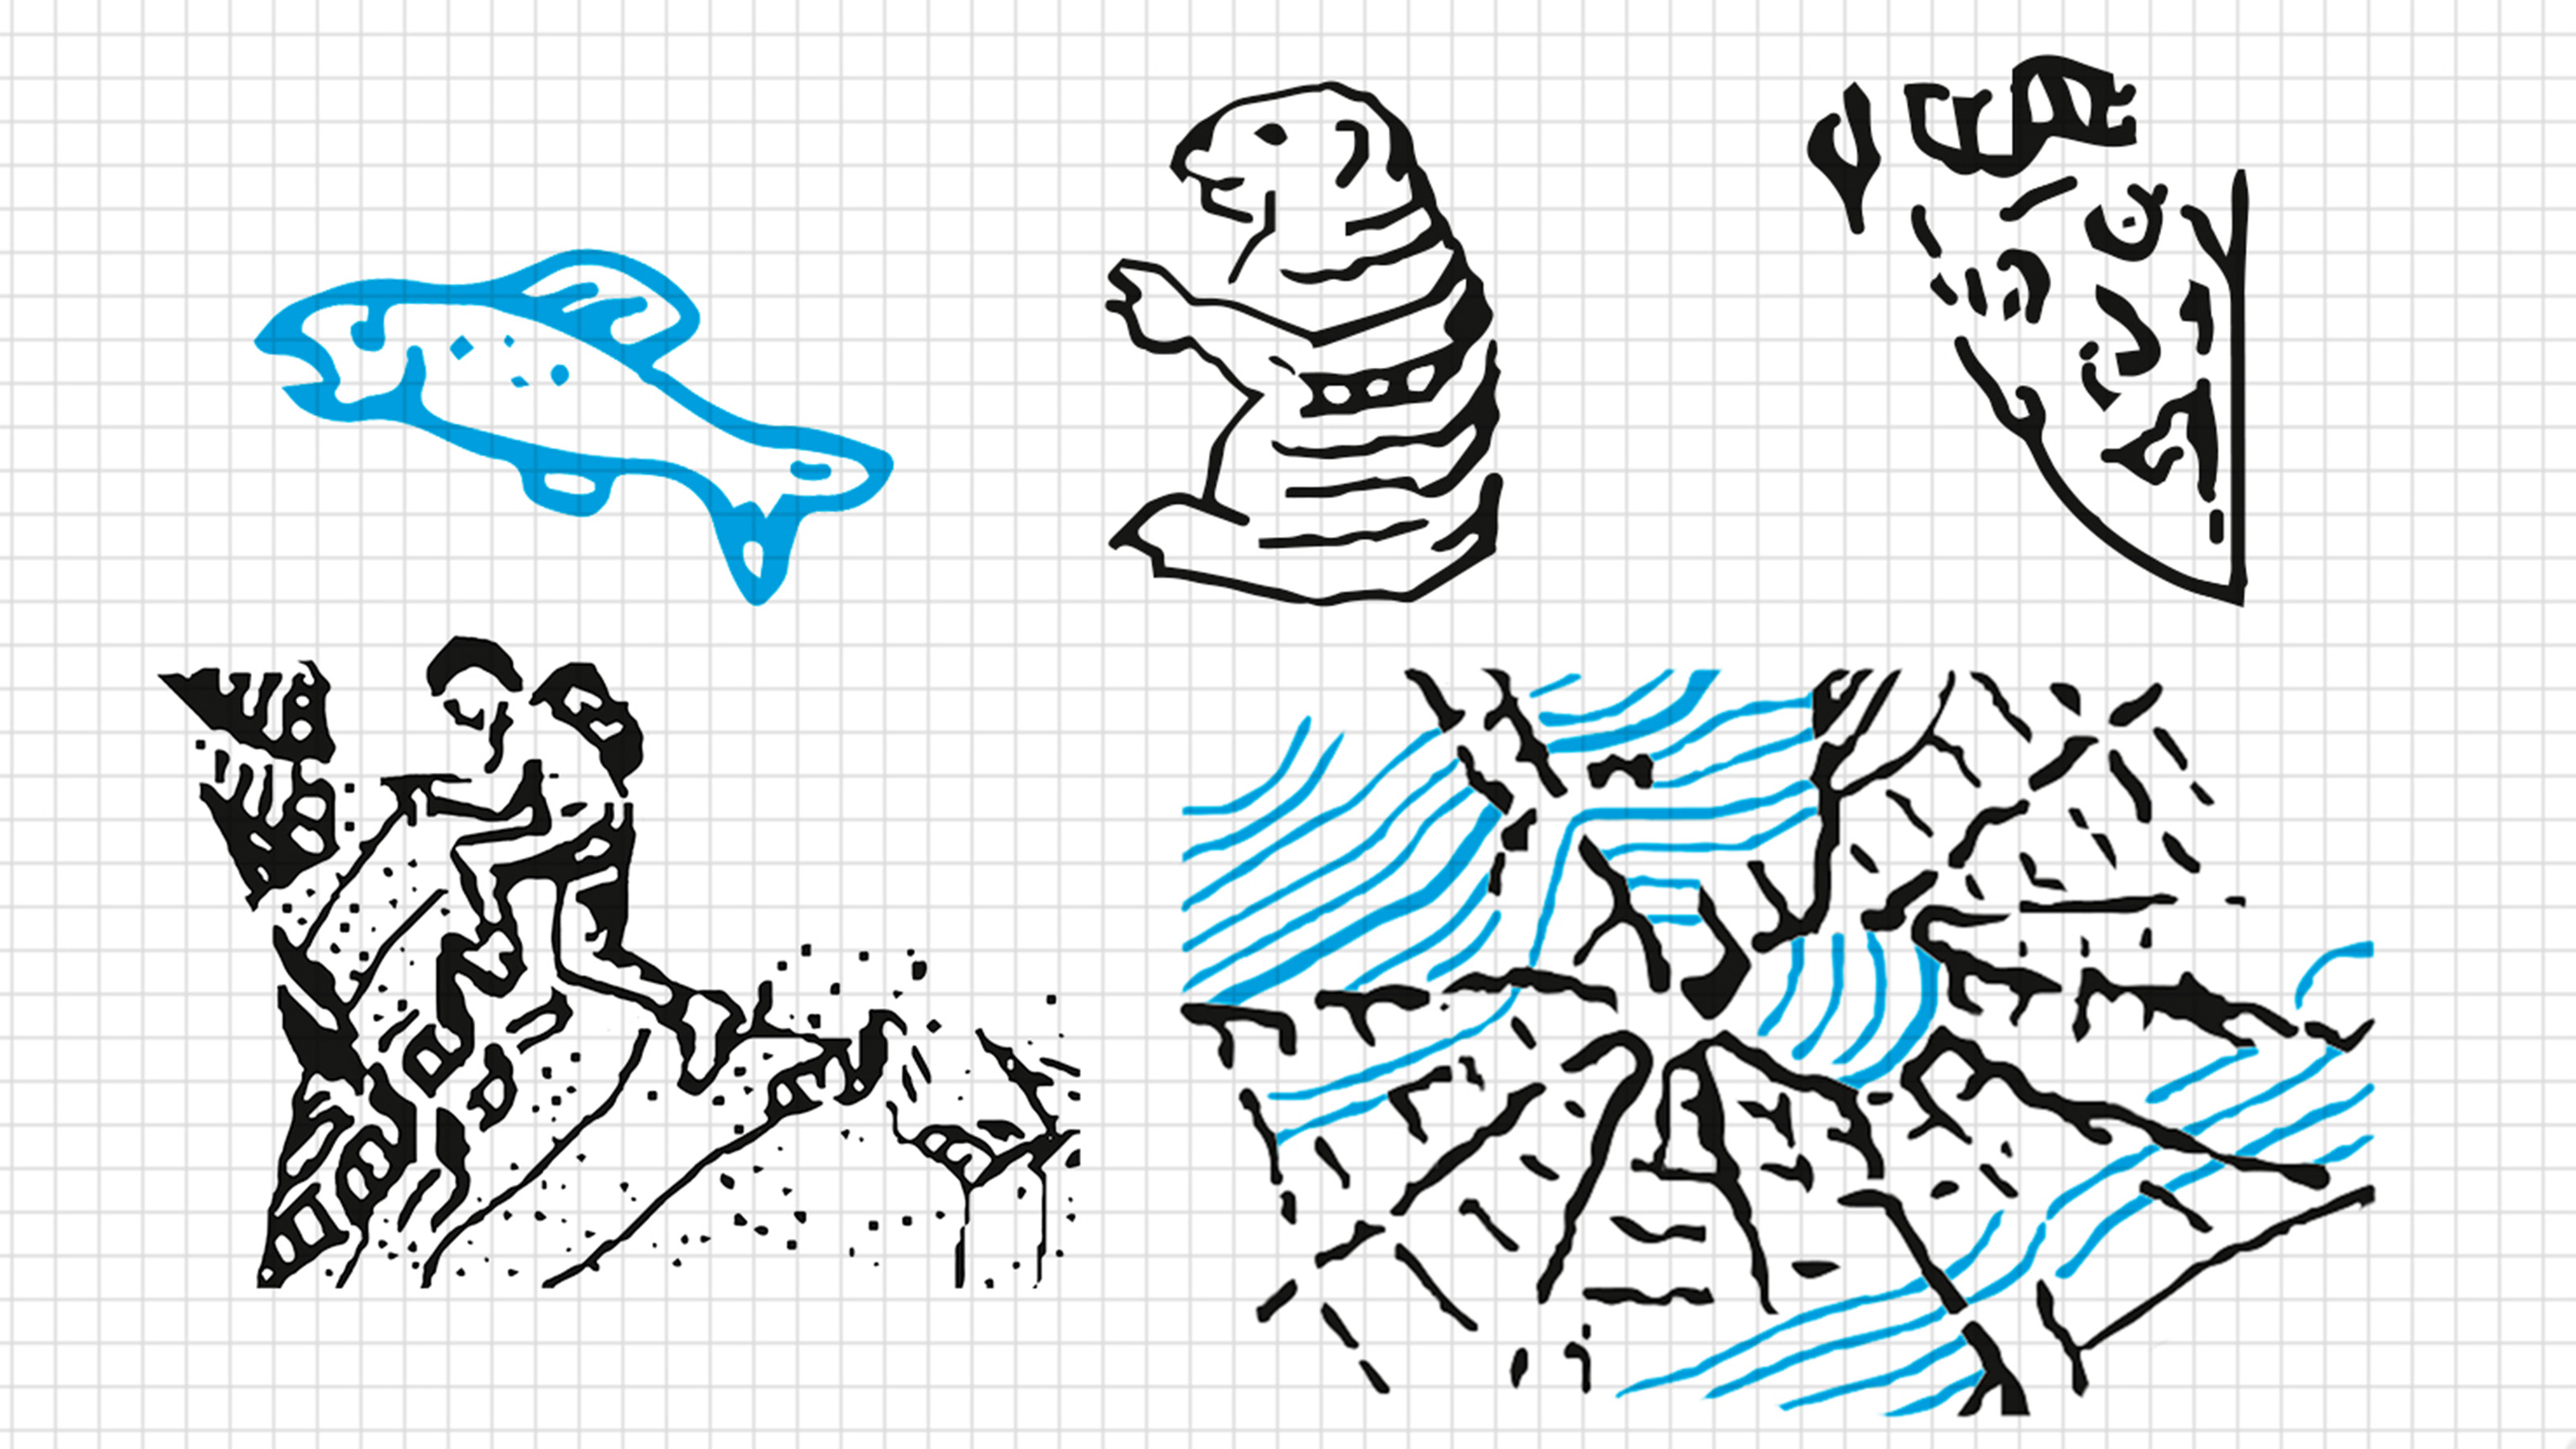 Cinq dessins introduits clandestinement dans les cartes nationales : Un poisson, une marmotte, un visage, un alpiniste et une araignée.